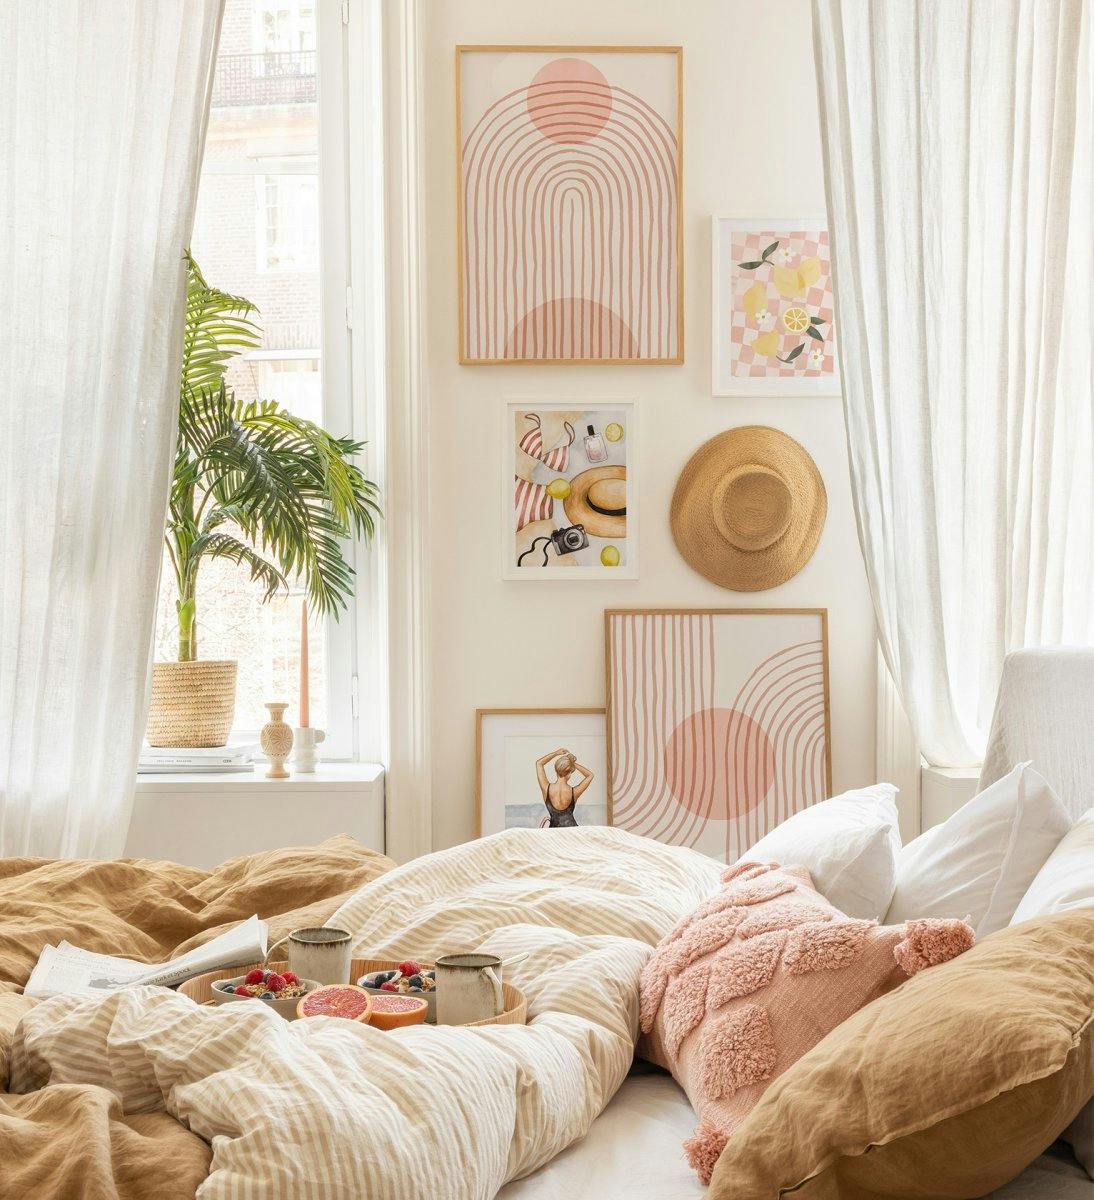 جدار معرض أنيق وجرلي باللون الوردي مع خطوط وأشكال مجردة مع إطارات من خشب البلوط وإطارات بيضاء لغرفة النوم